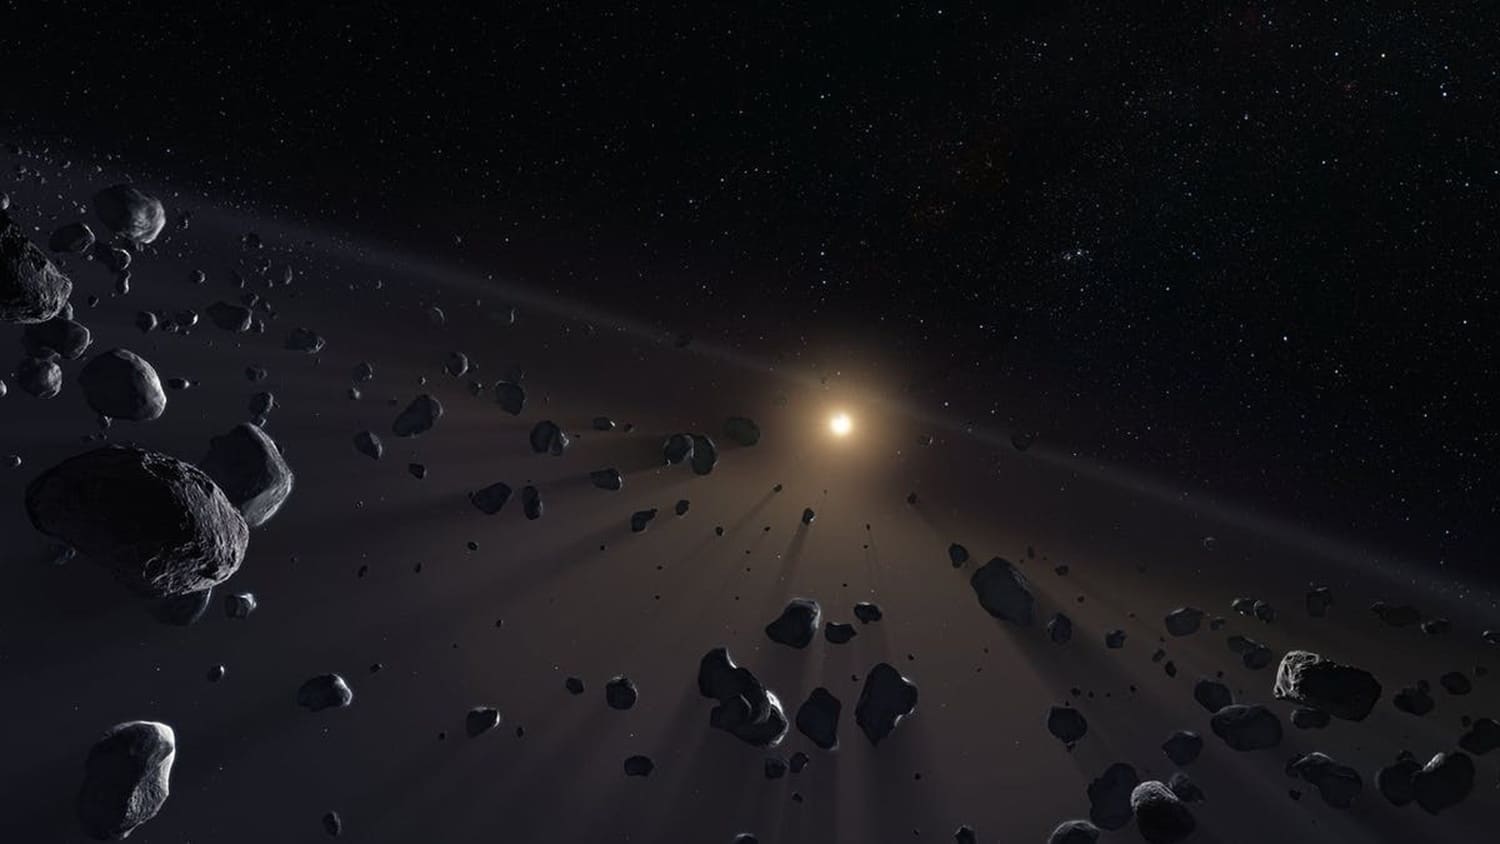 461 nuovi oggetti oltre l'orbita di Nettuno